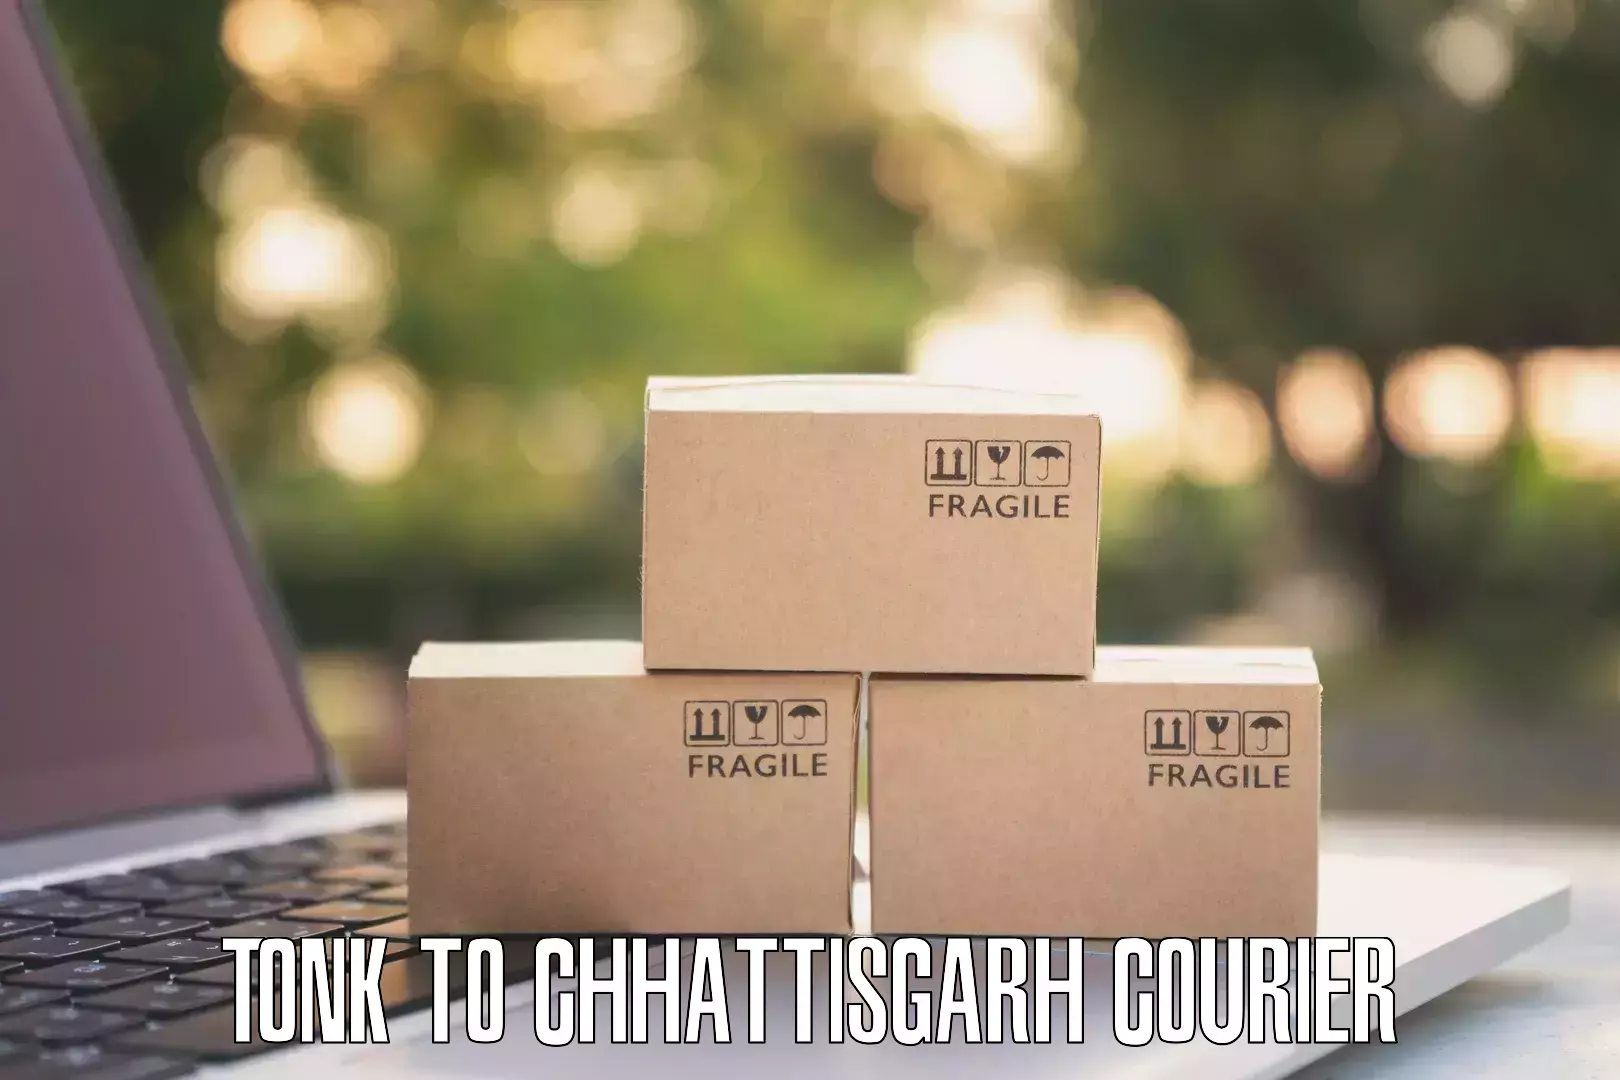 Global freight services Tonk to Chhattisgarh